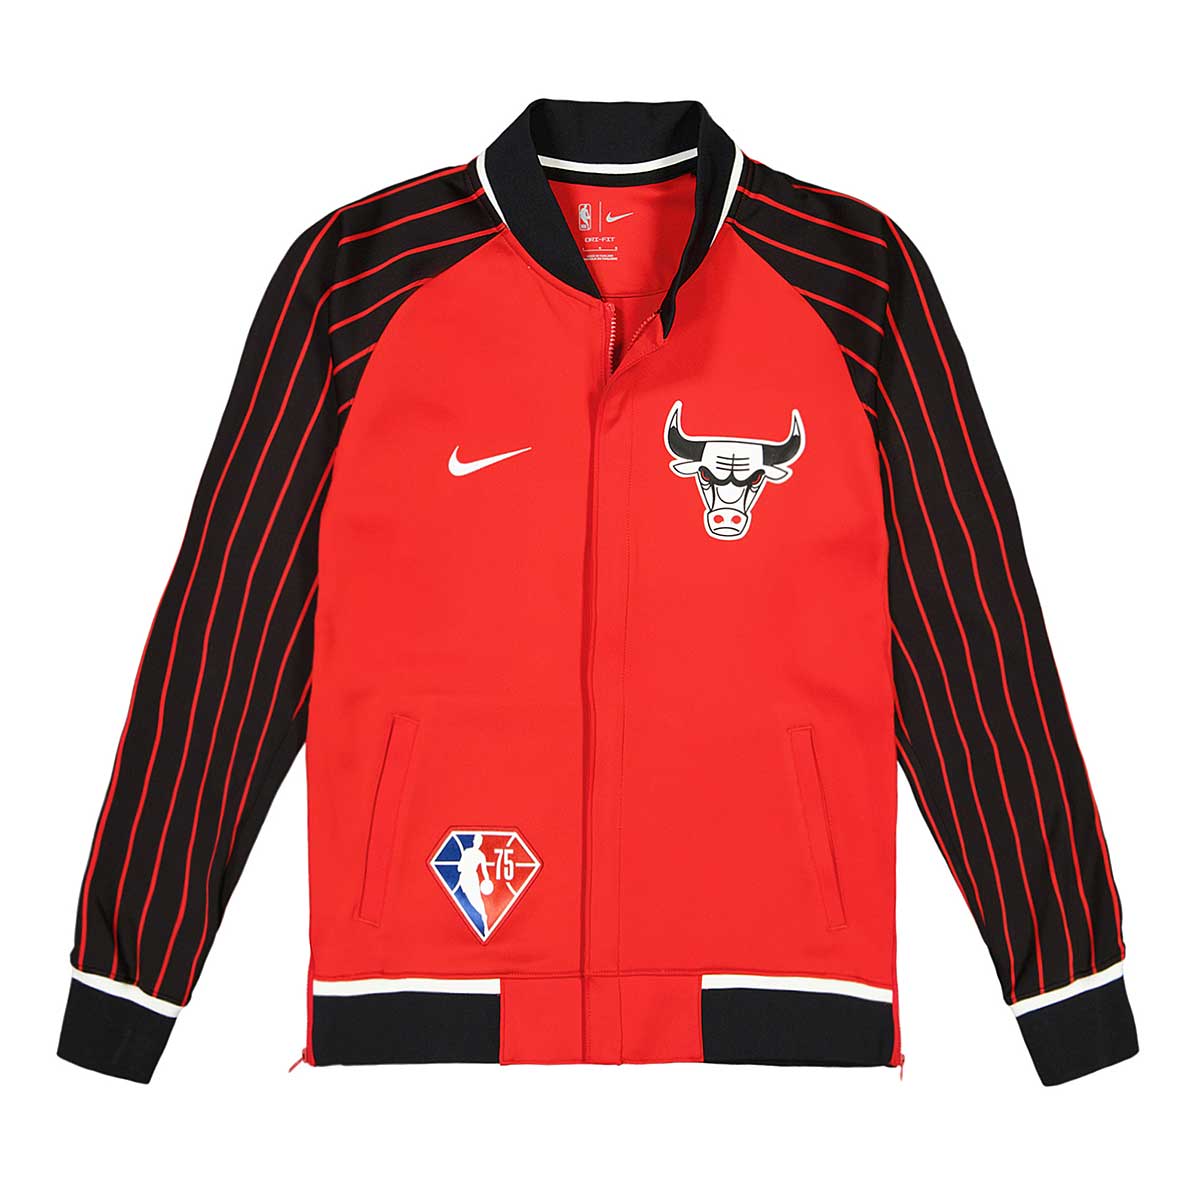 Nike Nba Chicago Bulls Showtime Jacket Mmt, University Red/Black/White